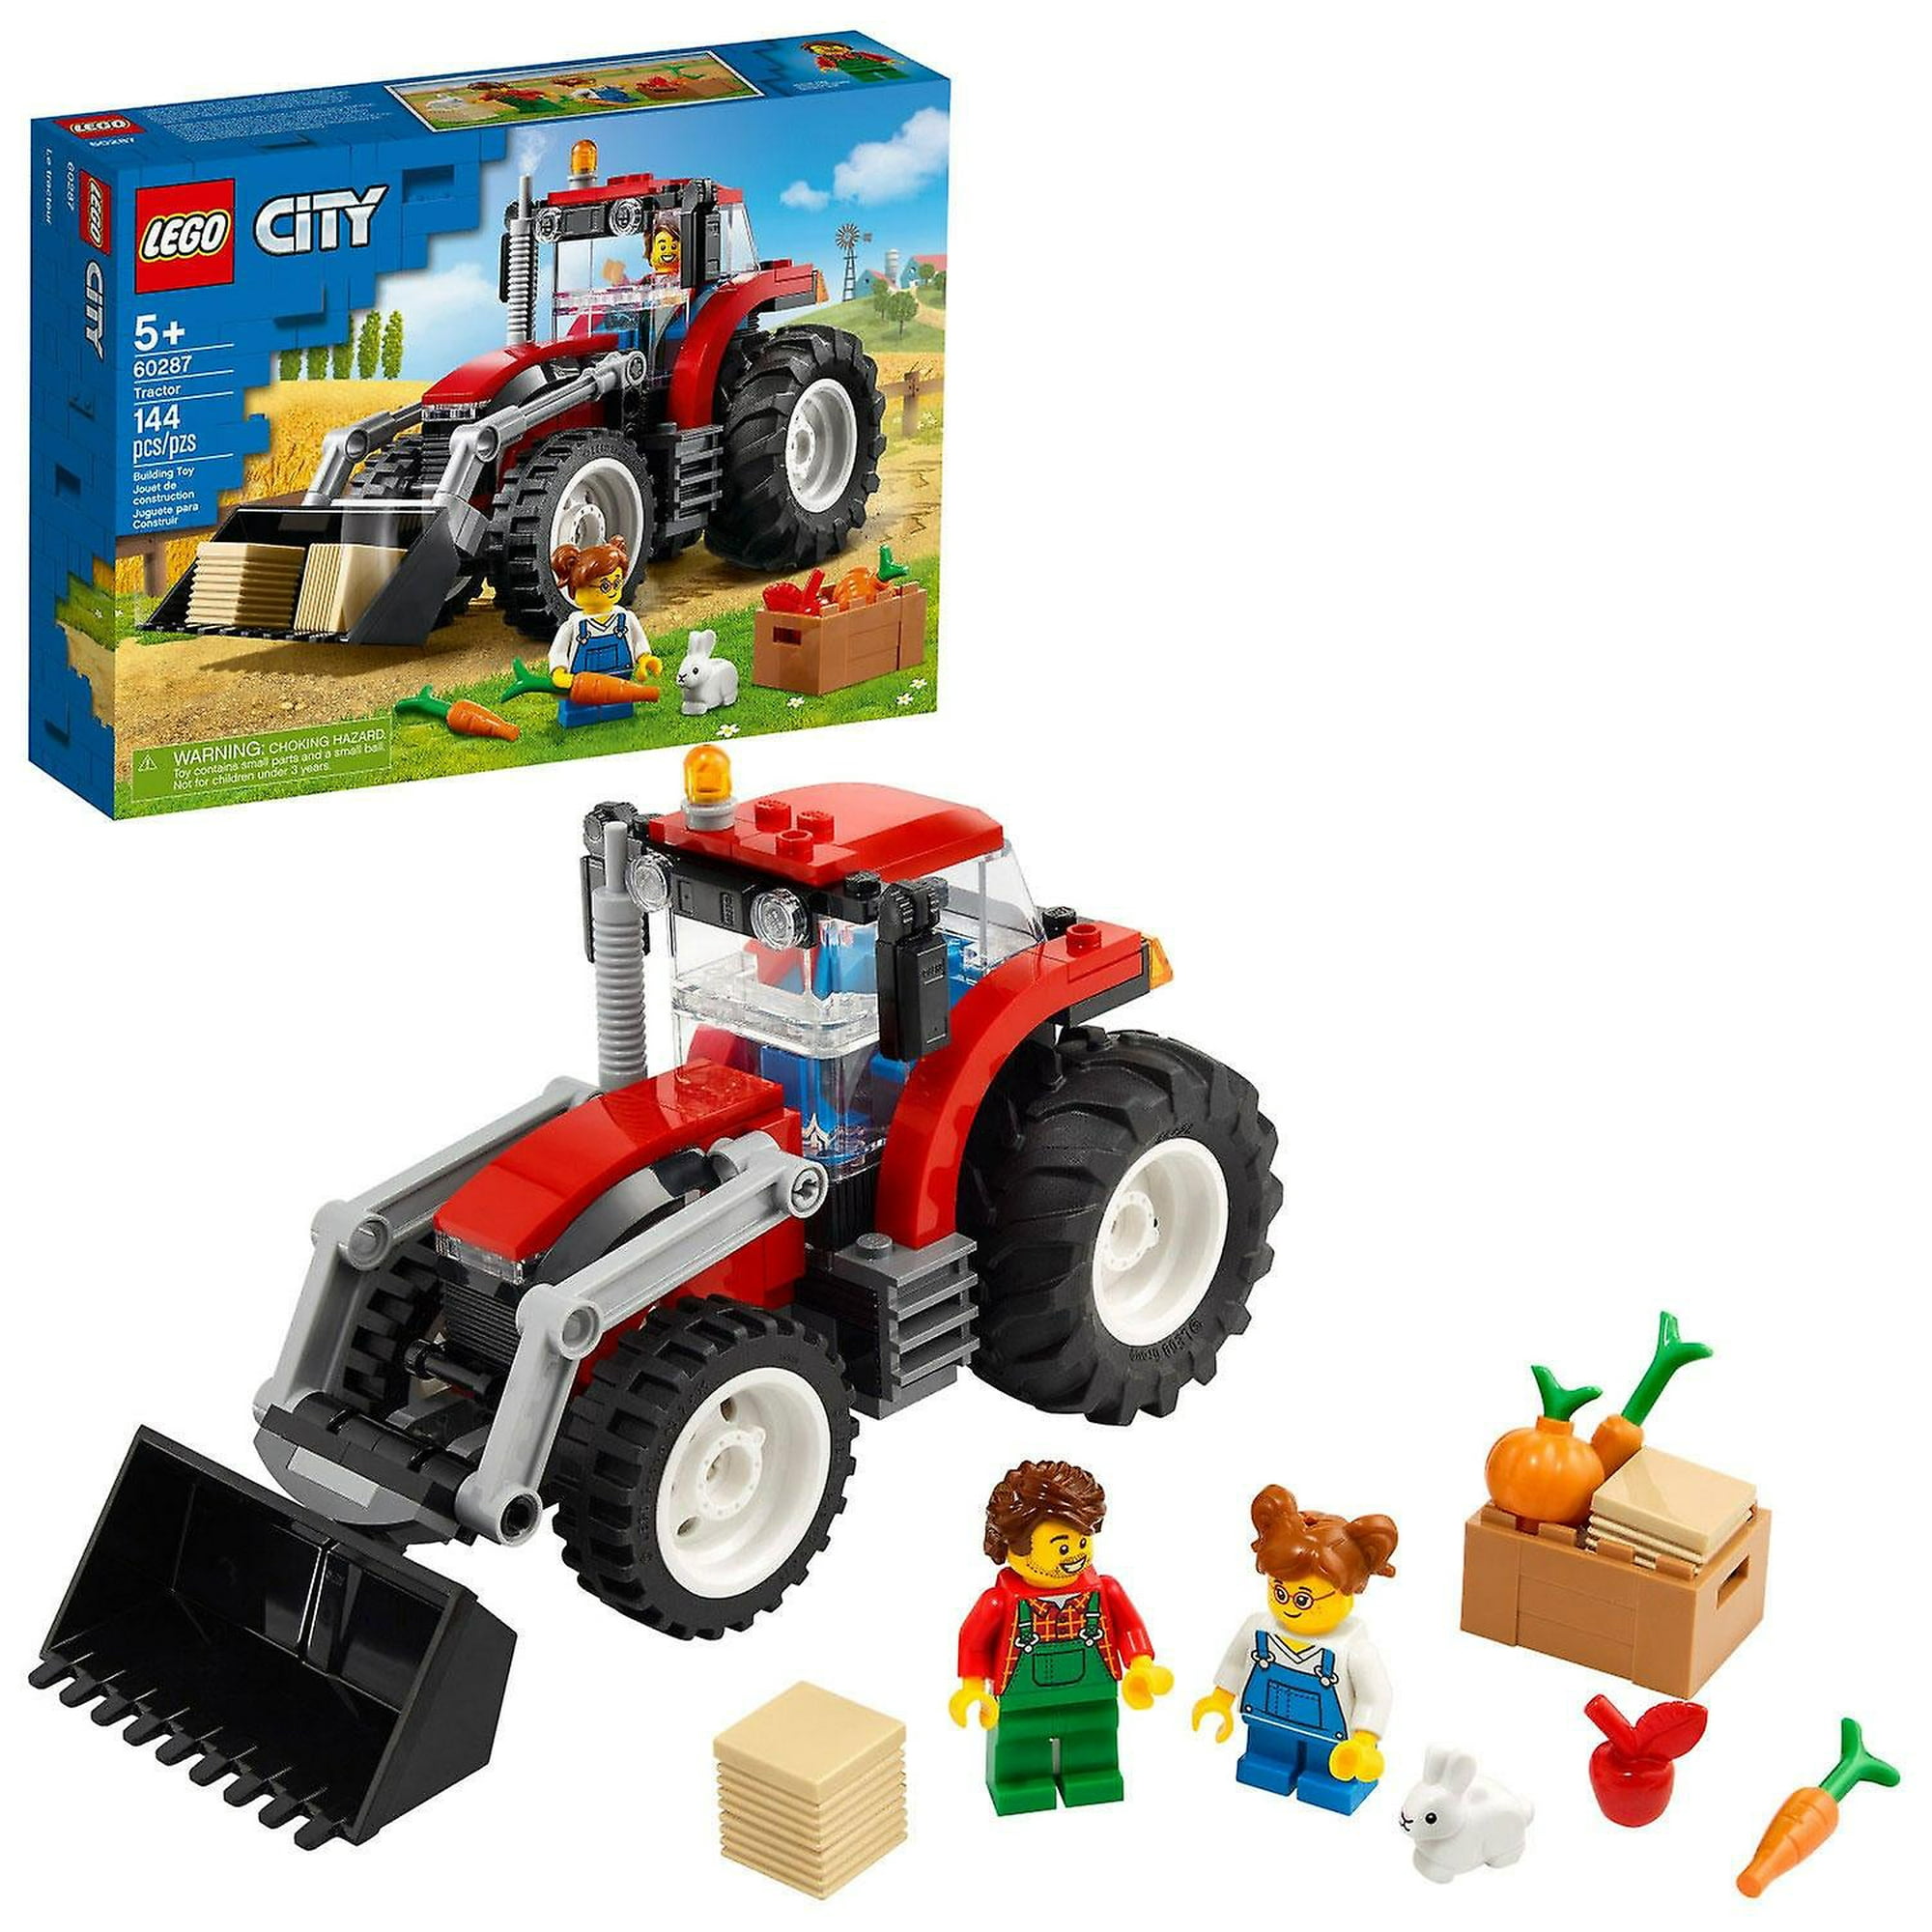 Kit de construcción de tractores lego city con 148 piezas, 1